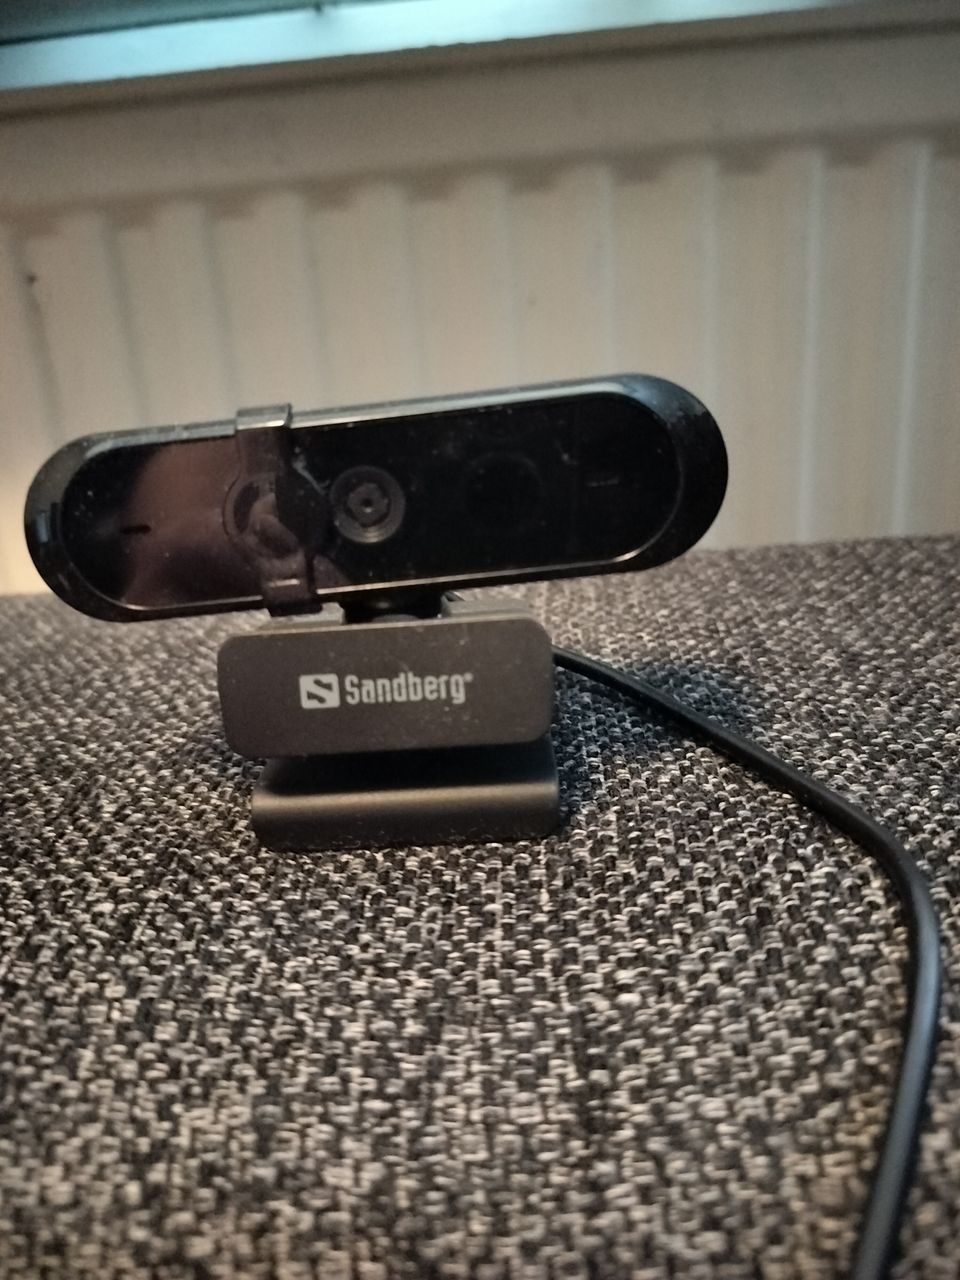 Sanberg Webcam Pro